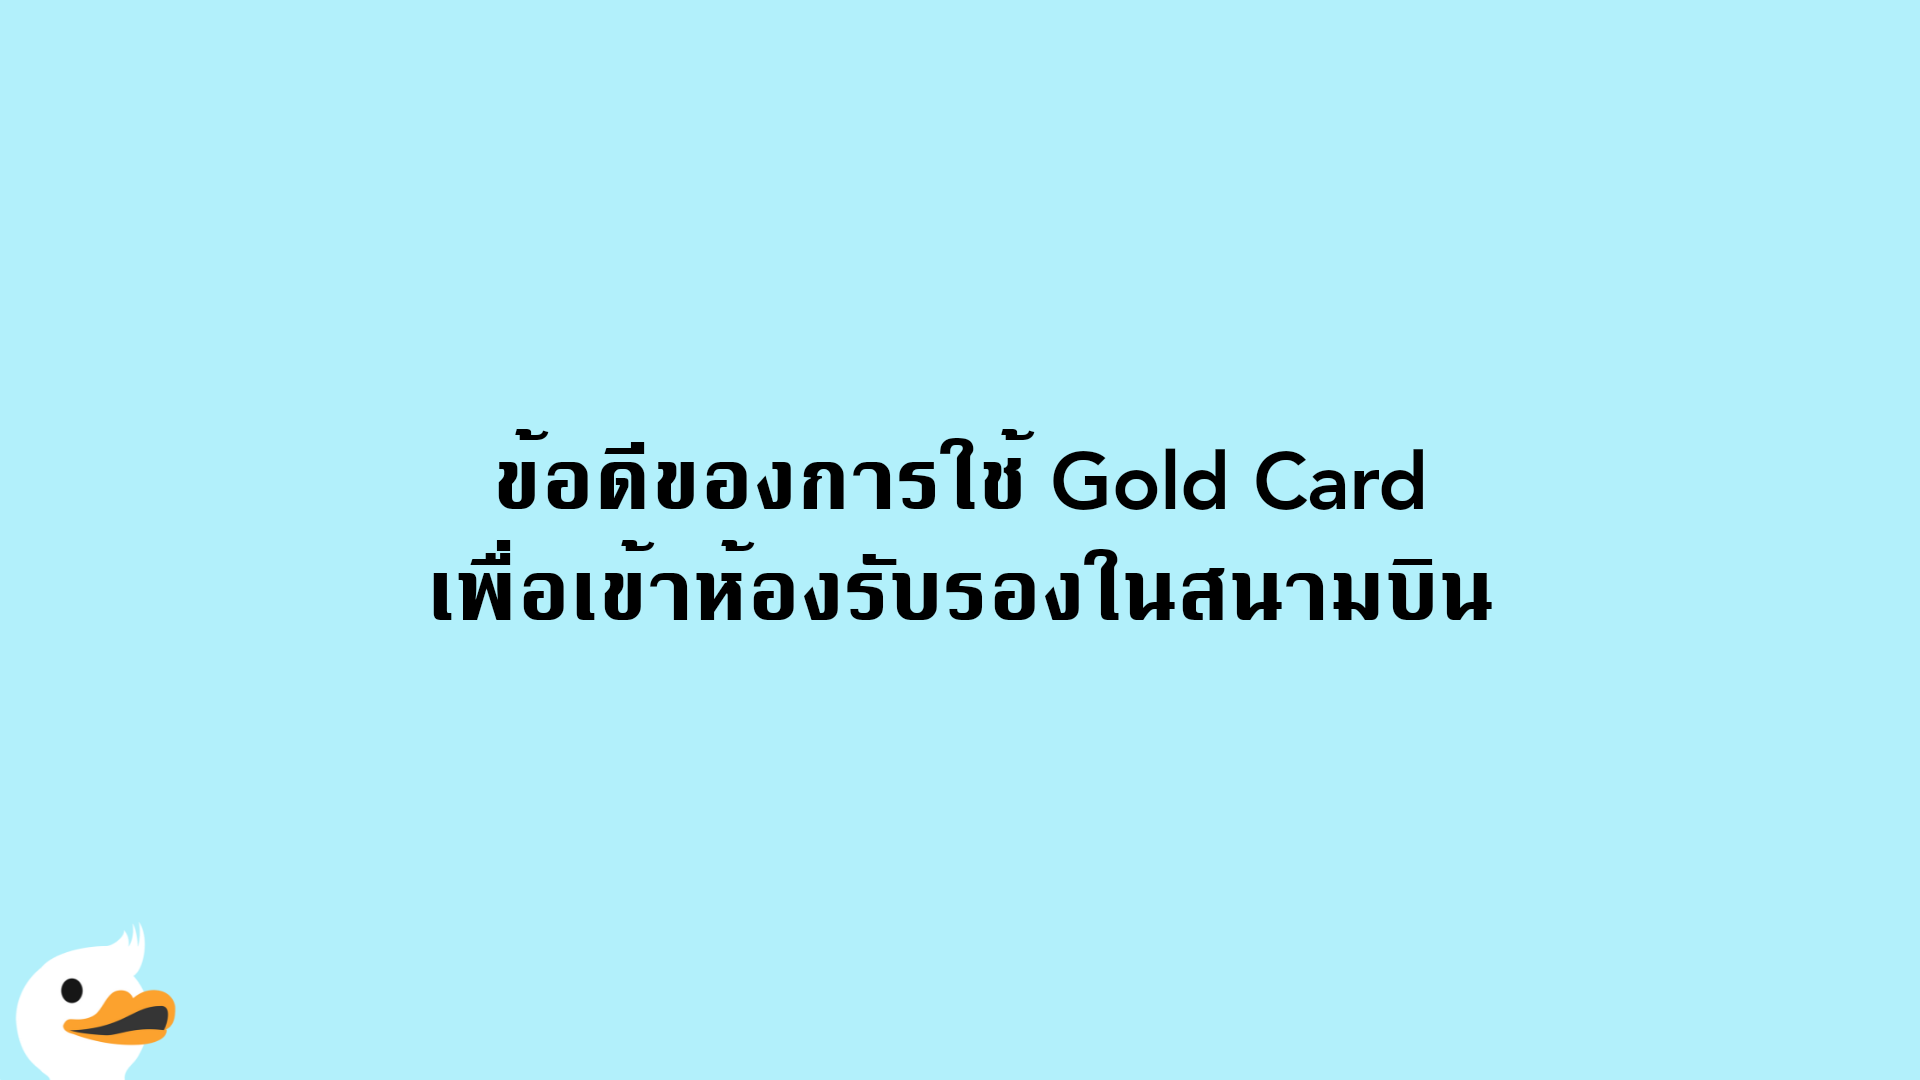 ข้อดีของการใช้ Gold Card เพื่อเข้าห้องรับรองในสนามบิน